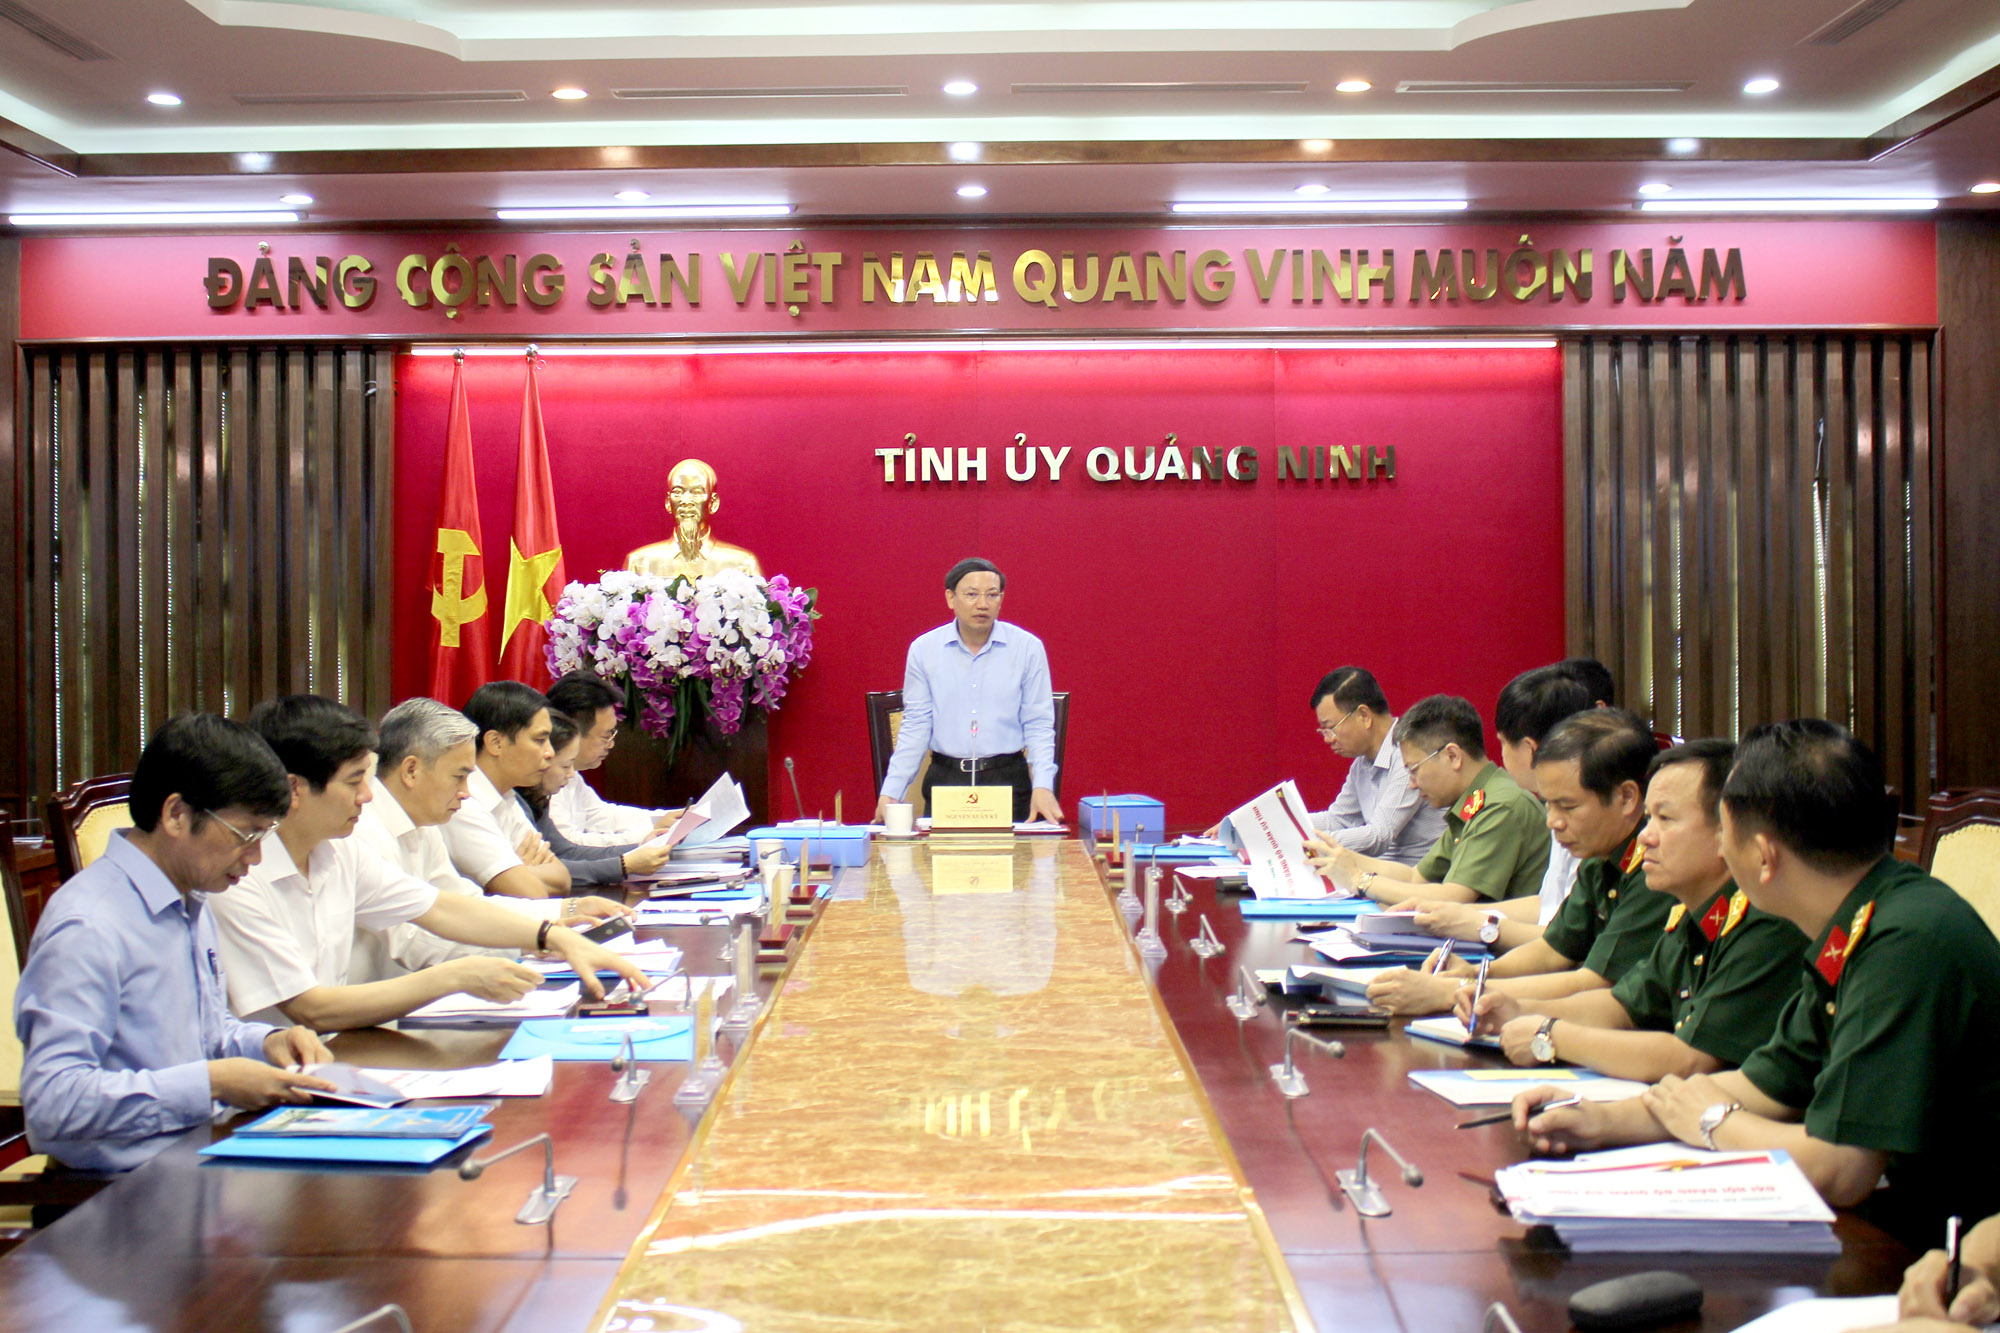 Đồng chí Nguyễn Xuân Ký, Bí thư Tỉnh ủy, Chủ tịch HĐND tỉnh kết luận buổi làm việc với Ban Thường vụ Đảng ủy Quân sự tỉnh.